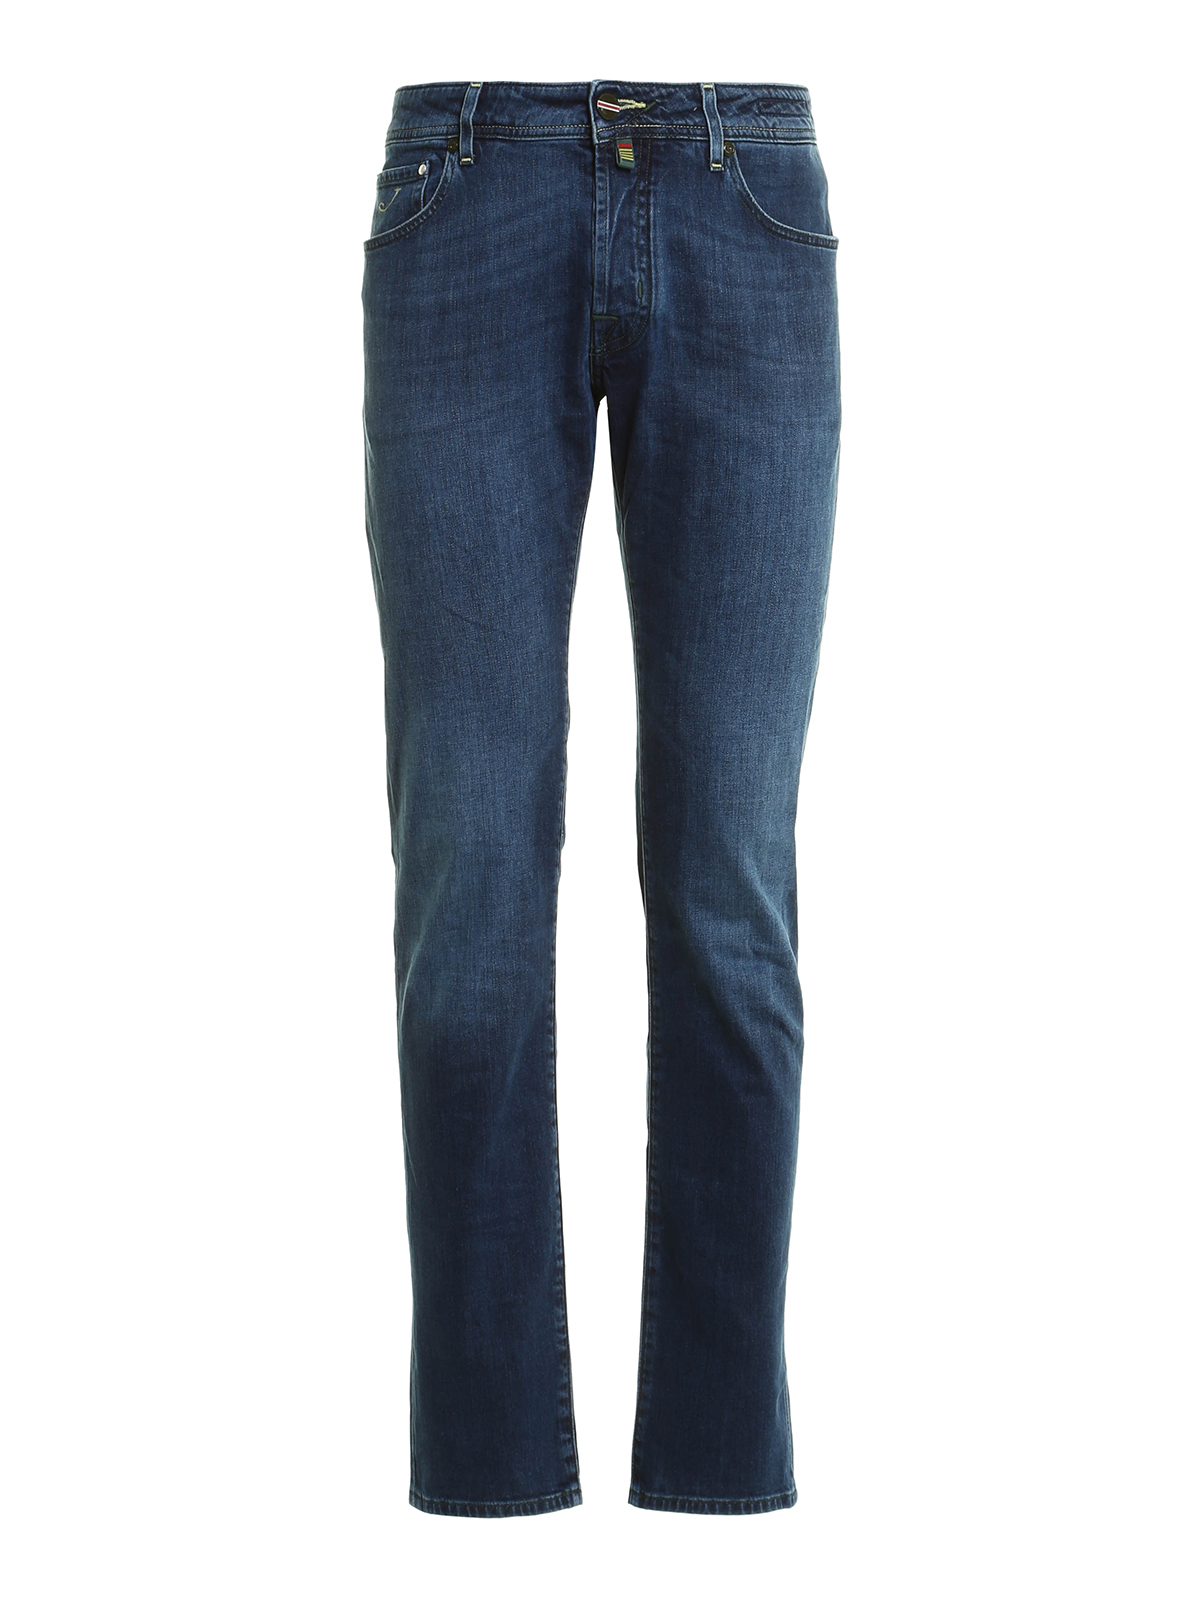 Straight leg jeans Jacob Cohen - J622 exclusive denim jeans ...